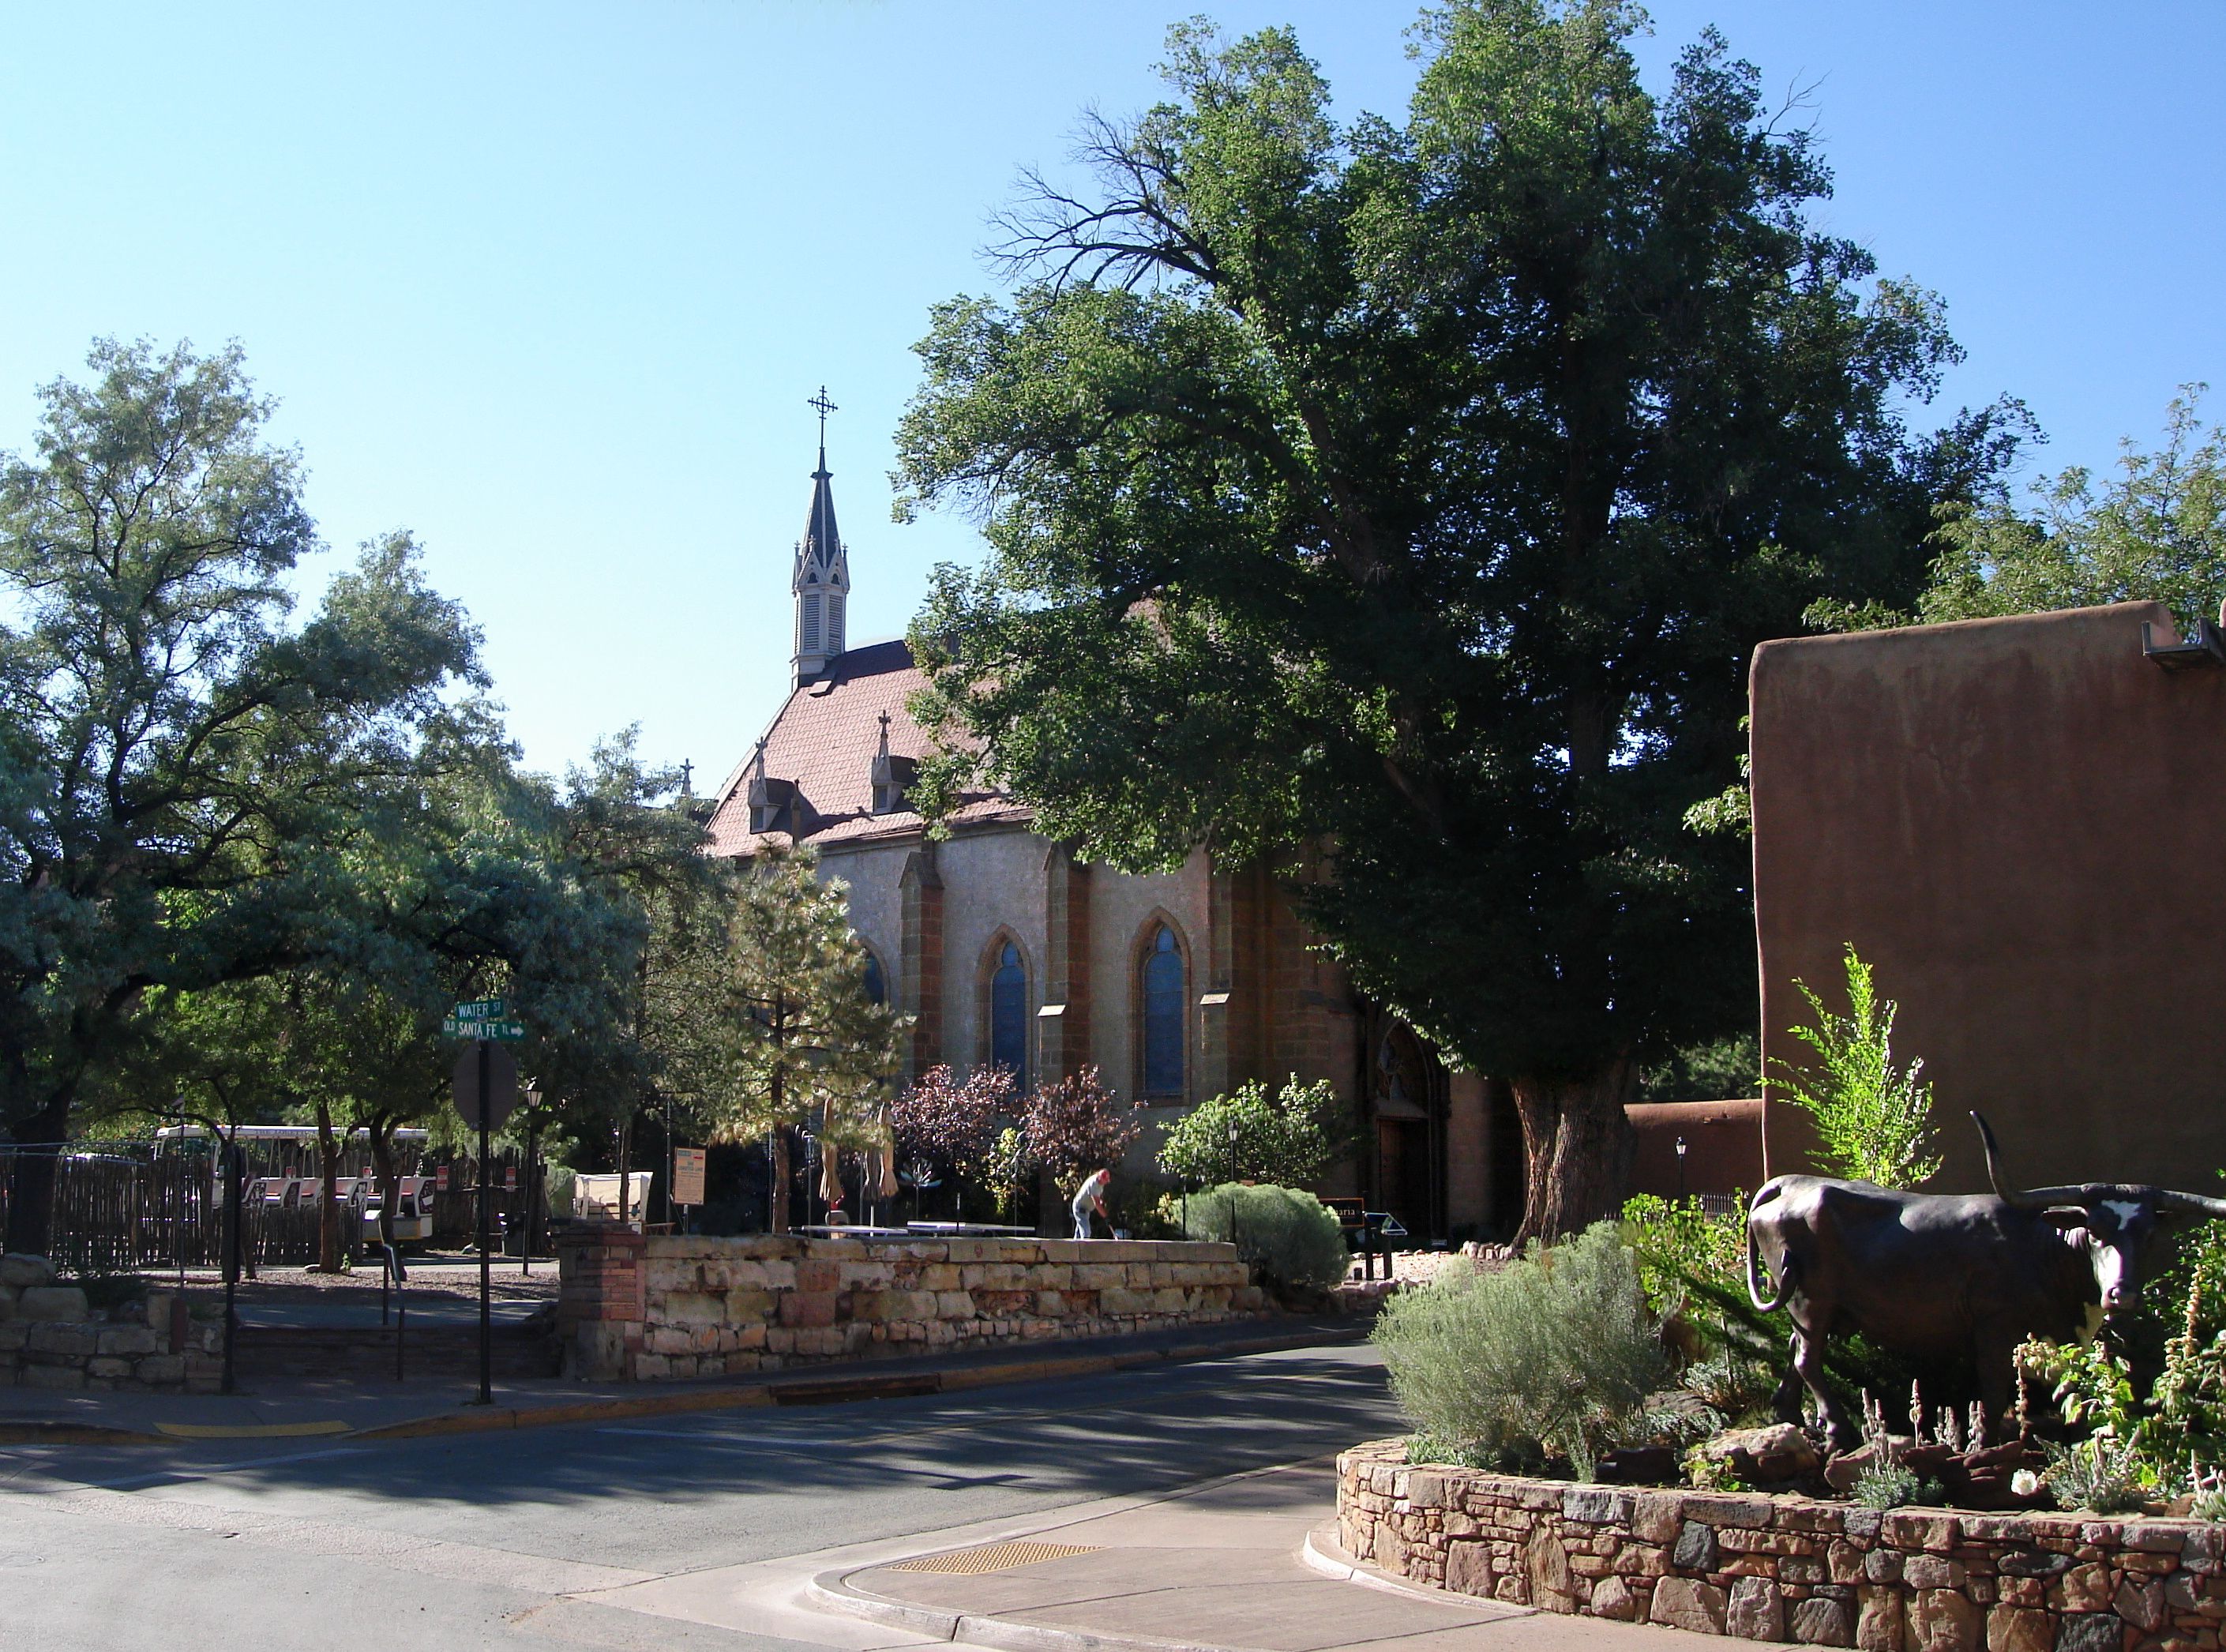 Santa Fe, New Mexico, United States - Loretto Chapel